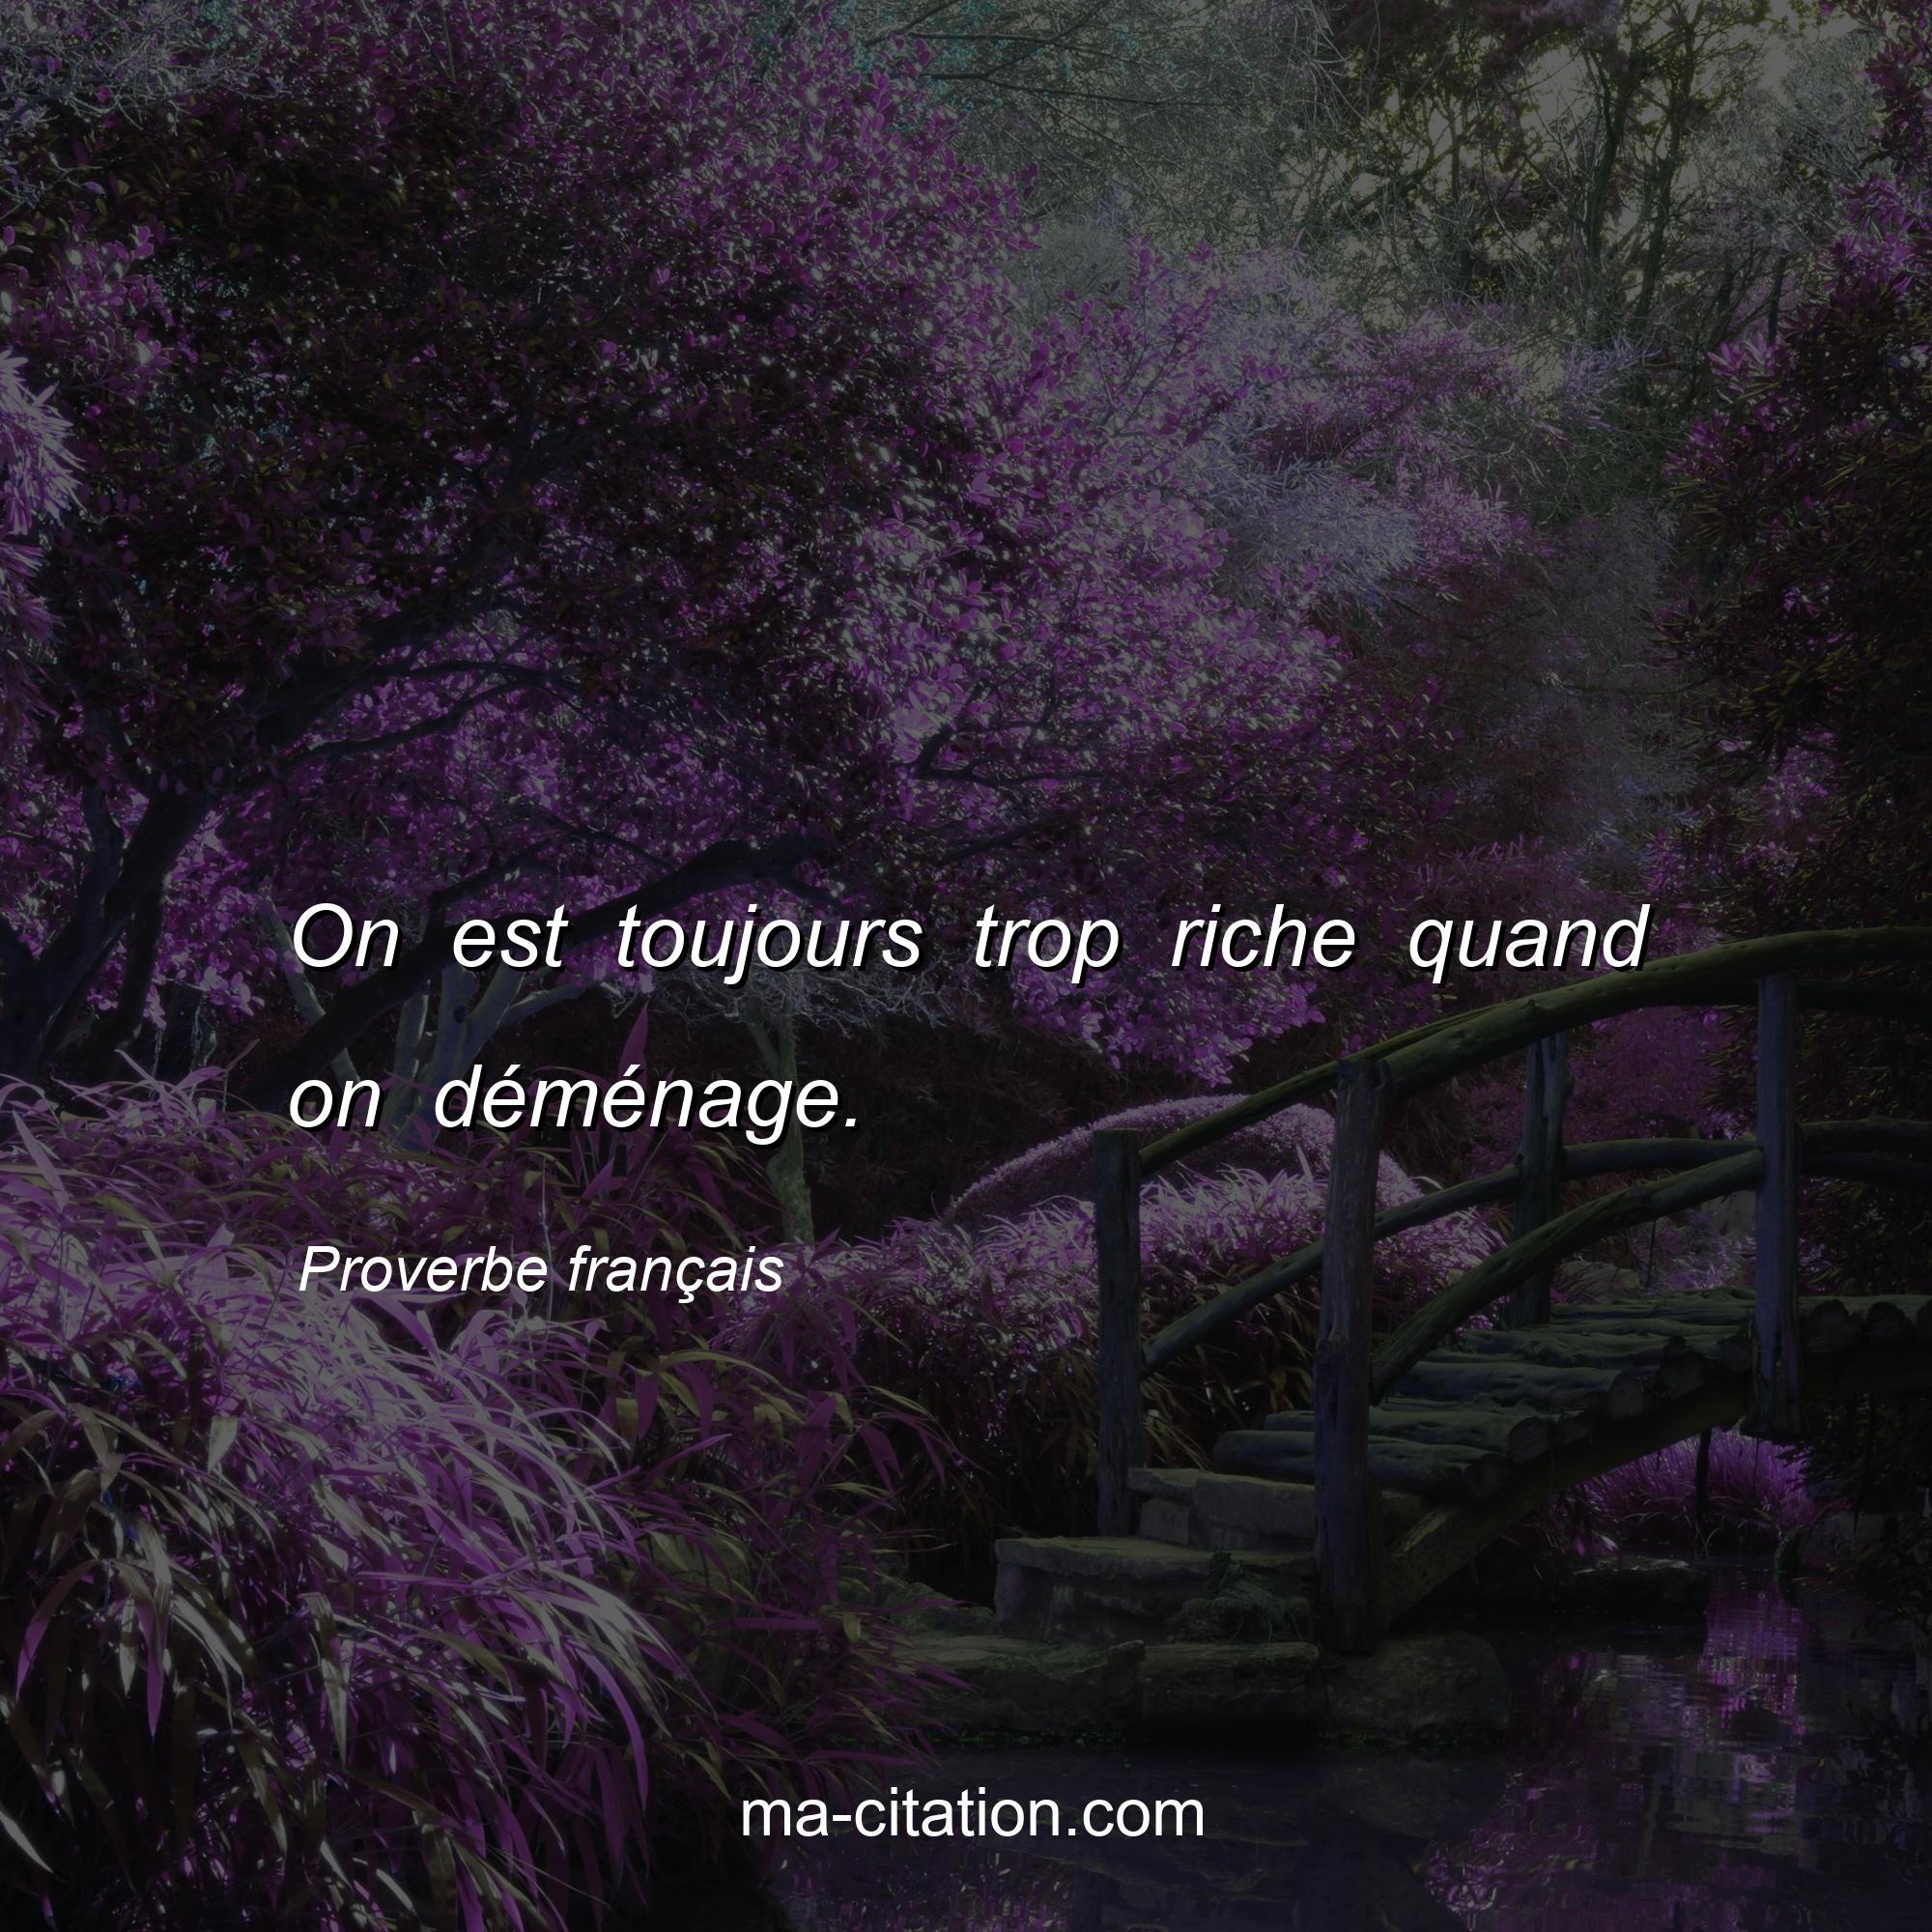 Proverbe français : On est toujours trop riche quand on déménage.